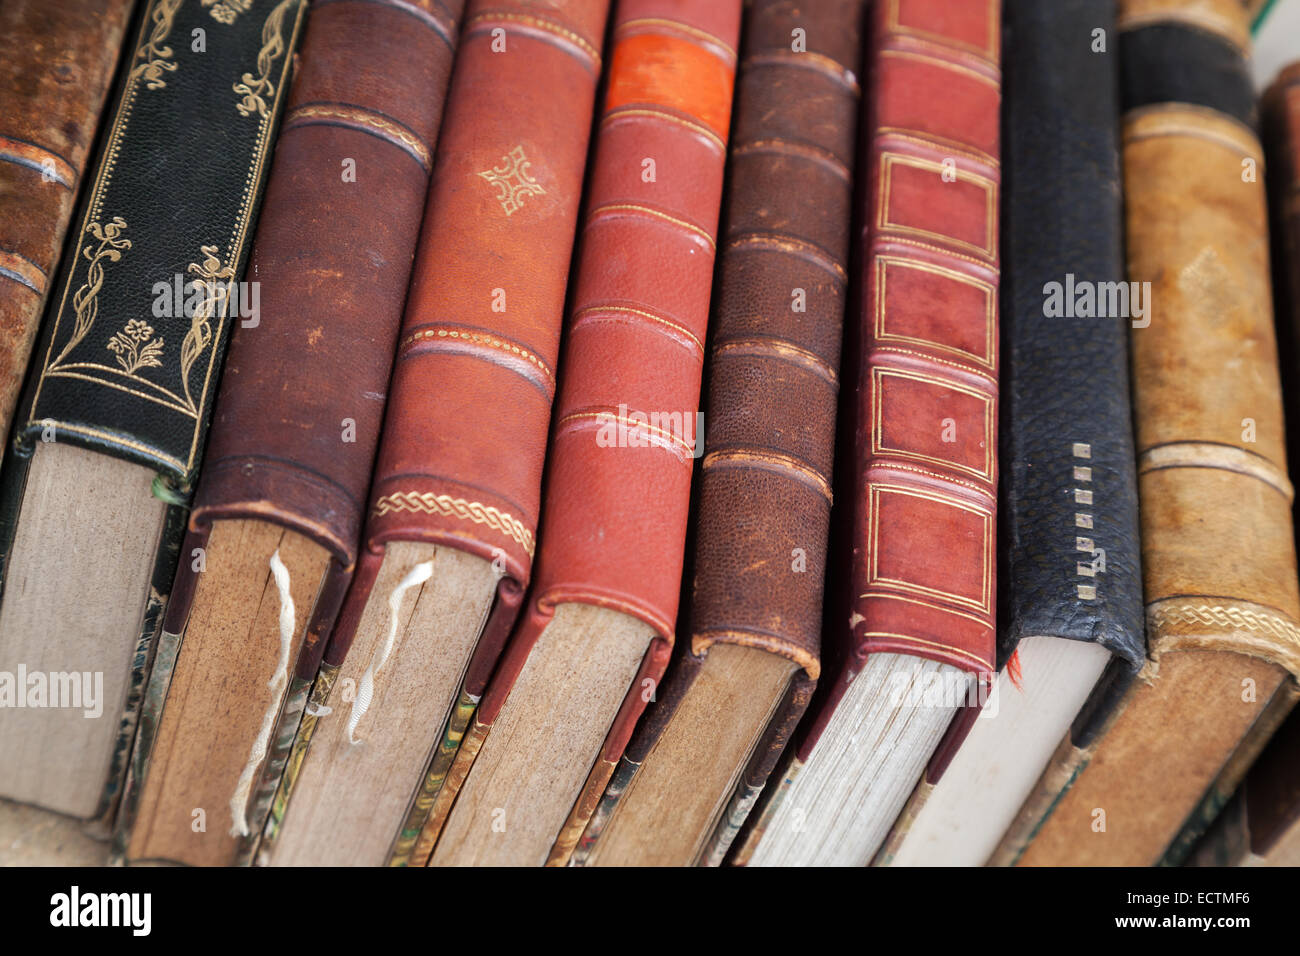 Los viejos libros con coloridas fundas de cuero en el mercado laicos counter Foto de stock